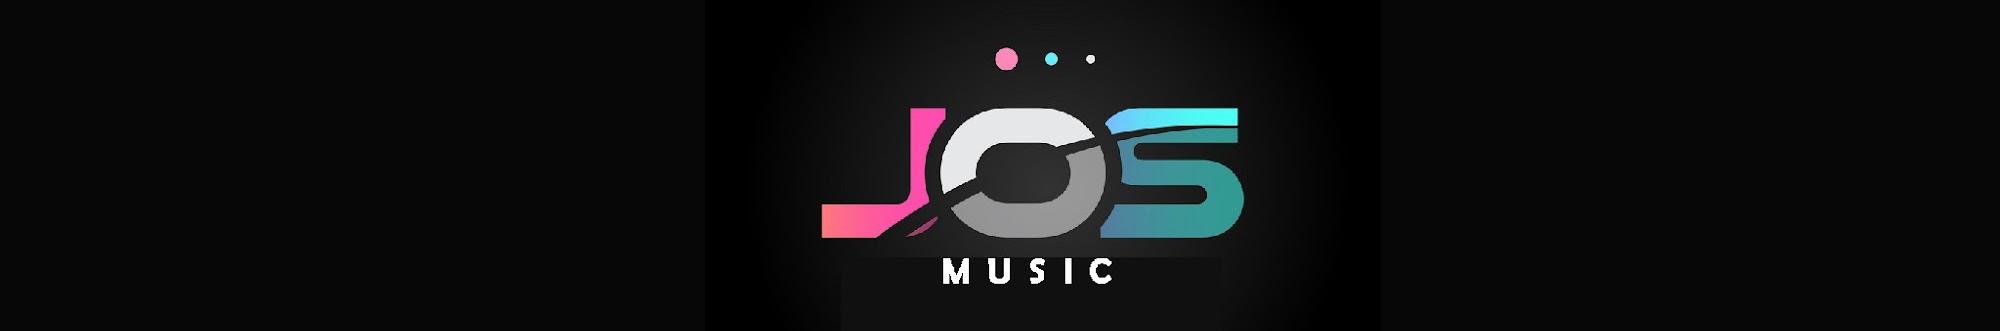 JOSS MUSIC